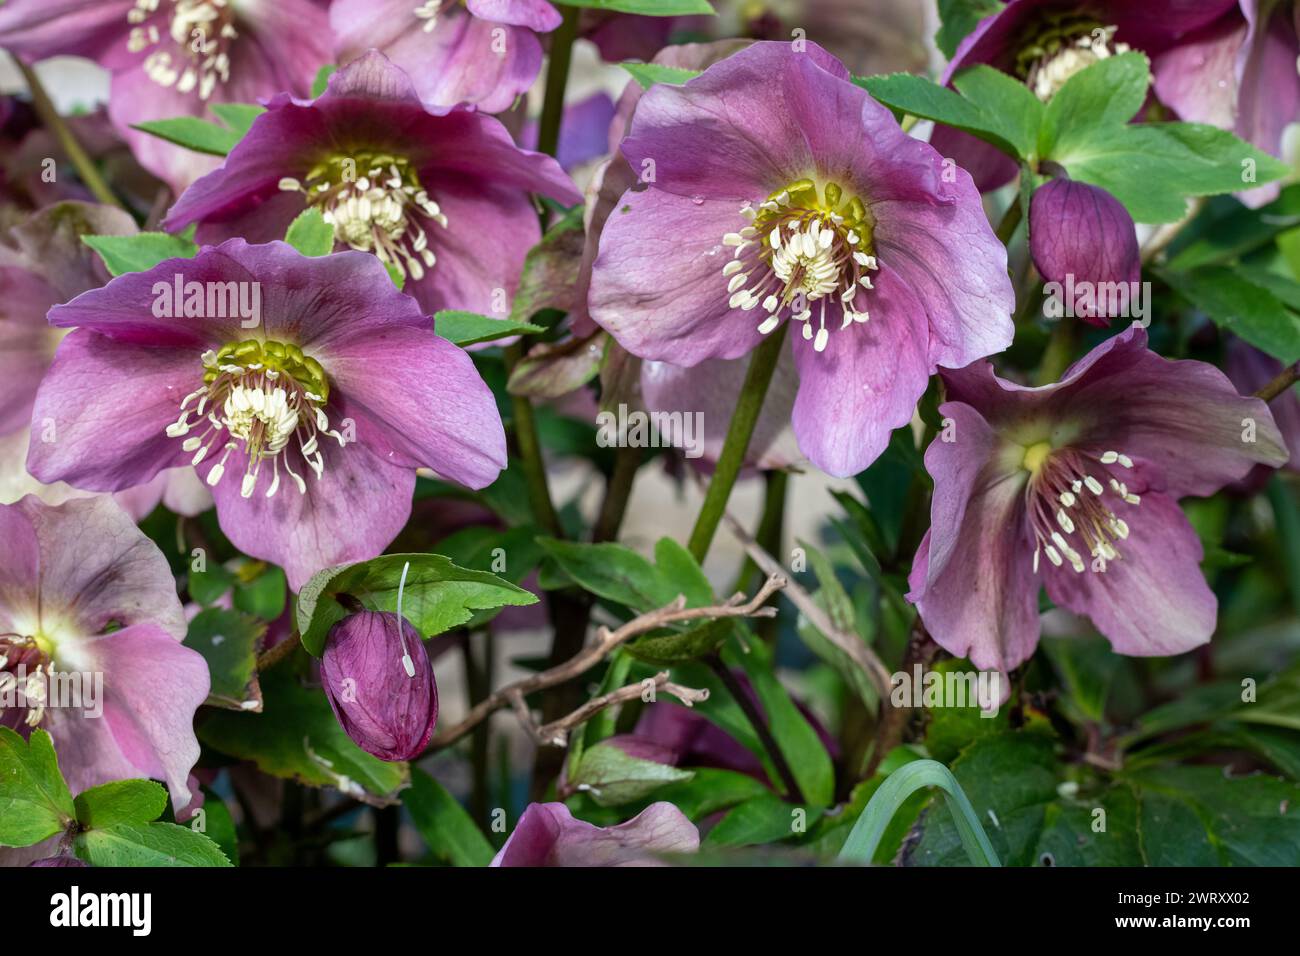 Gros plan de fleurs d'hellebore rose (helleborus orientalis) en fleurs Banque D'Images